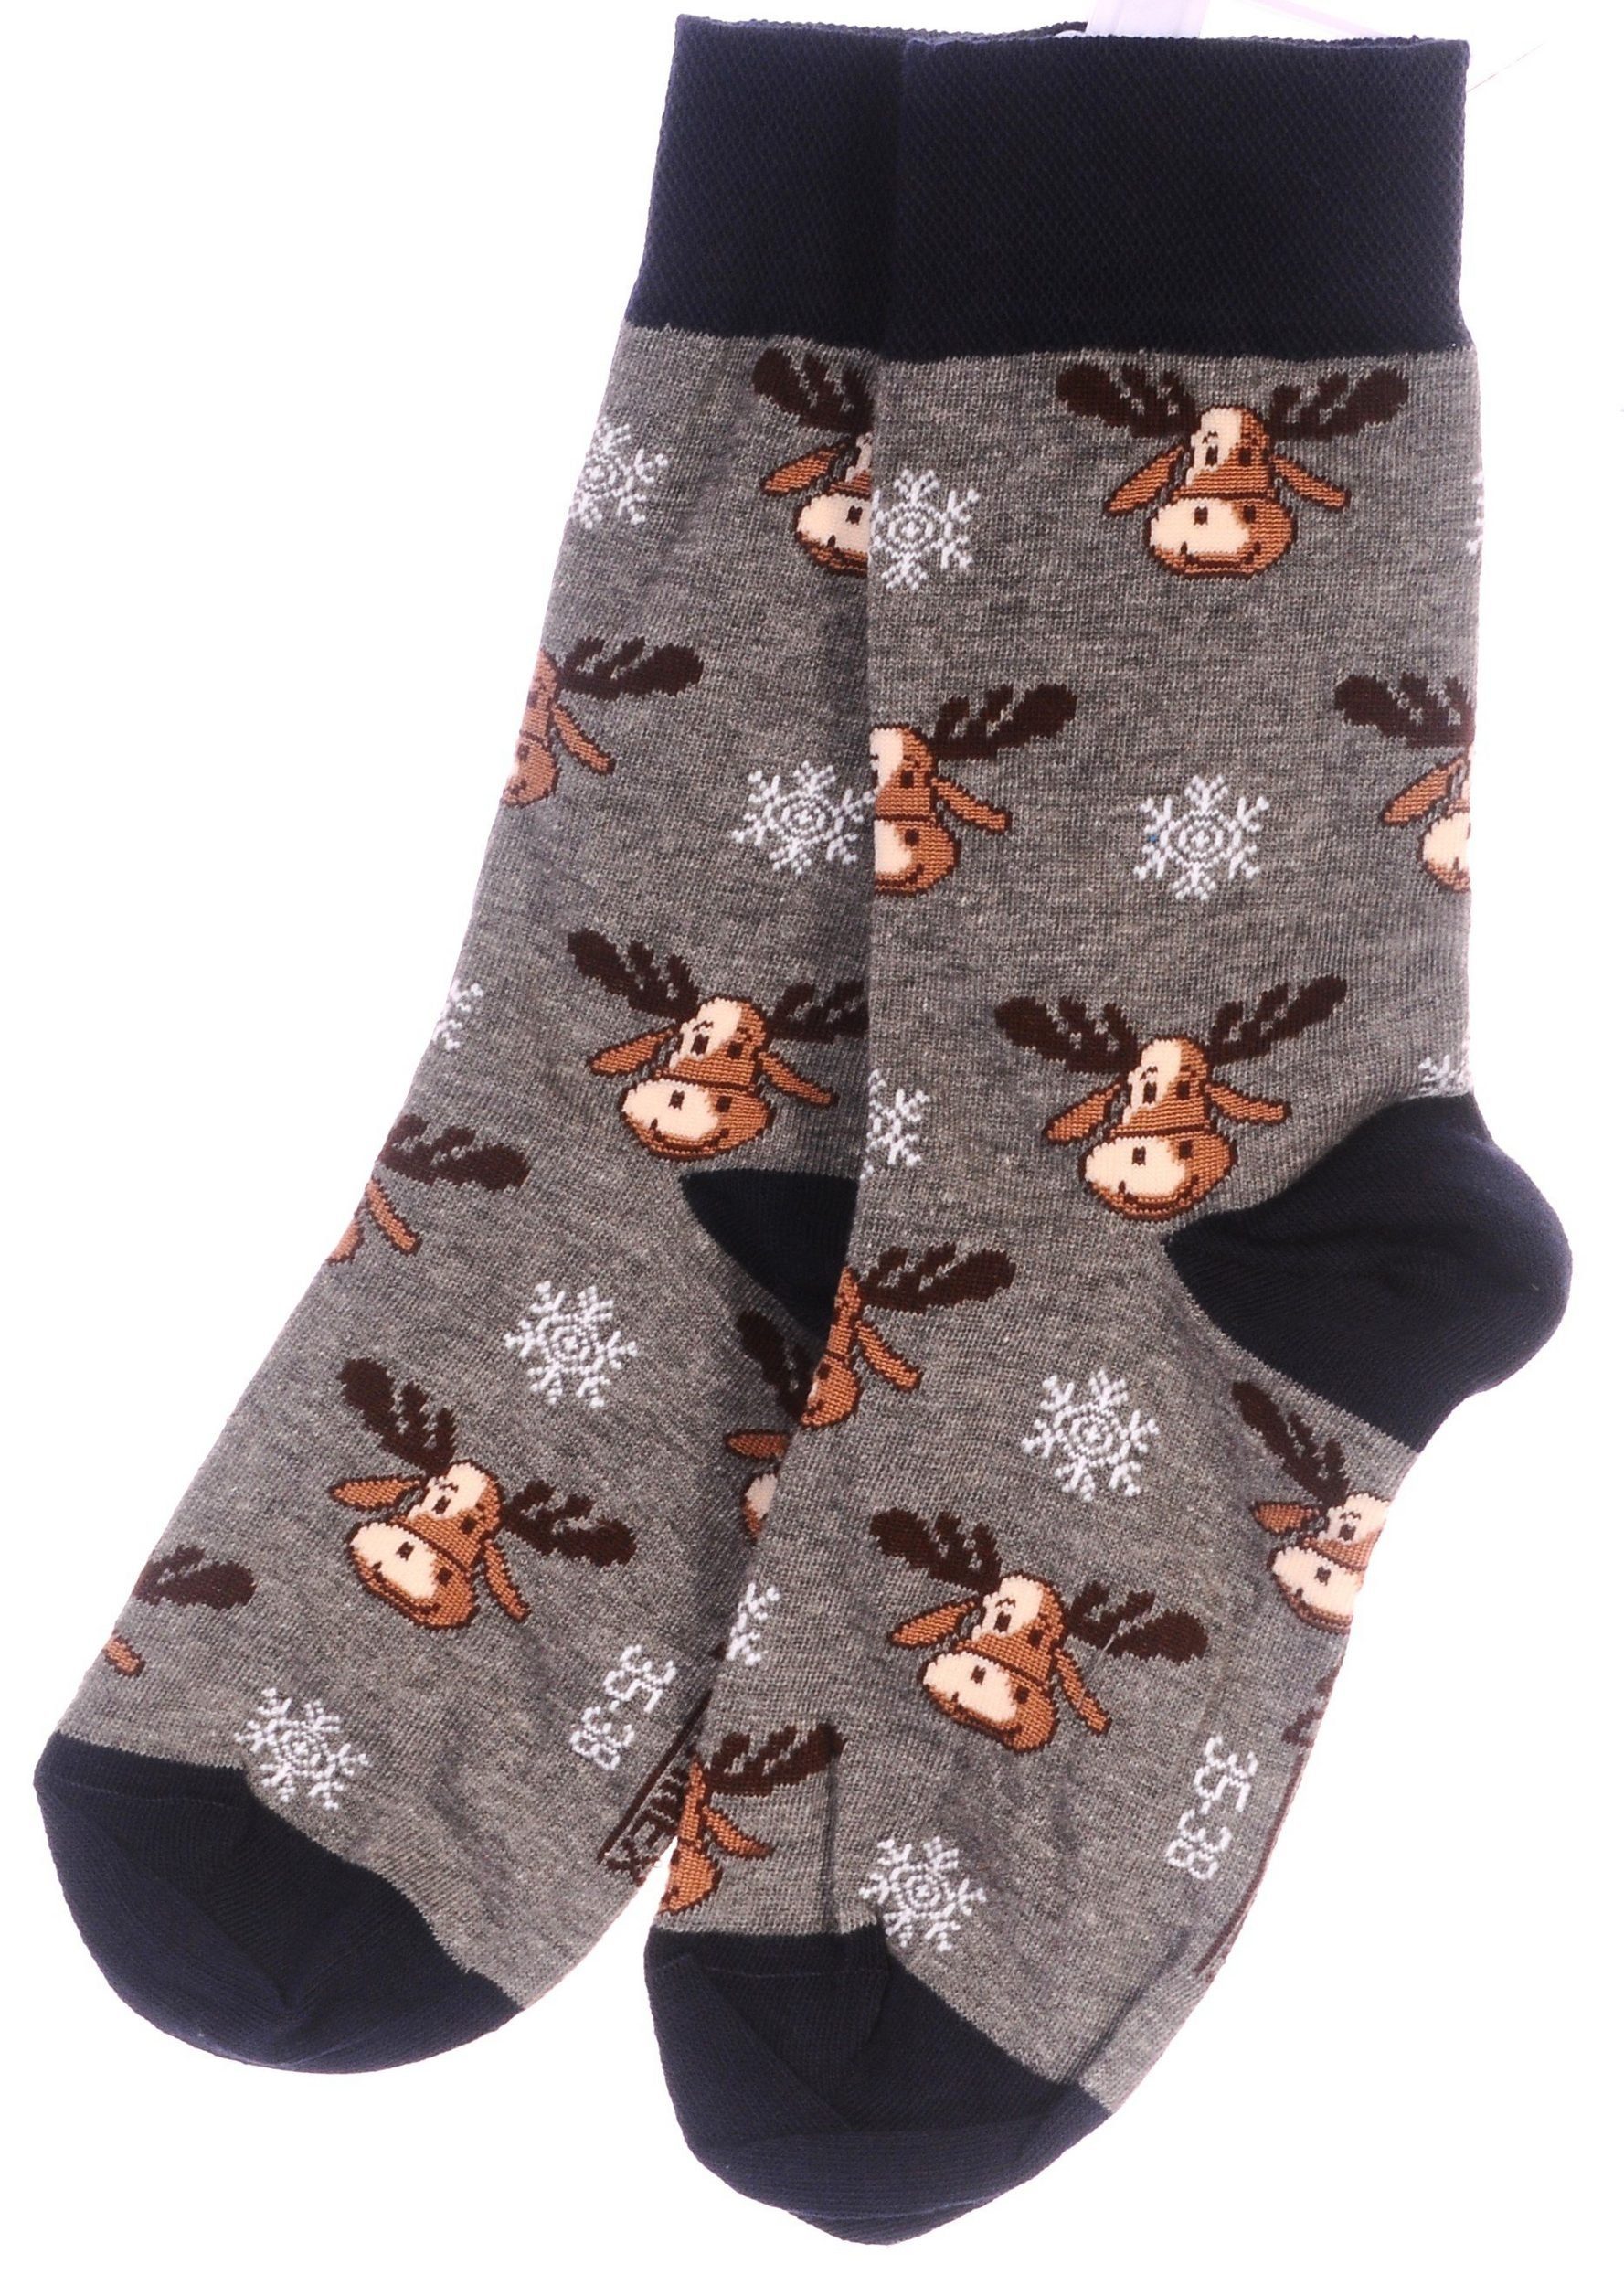 Martinex Socken Freizeitsocken 1 39 46 43 Grau 38 weihnachtlich, für Weihnachtssocken, Familie 42 festlich, Socken ganze Socken Strümpfe Paar die 35